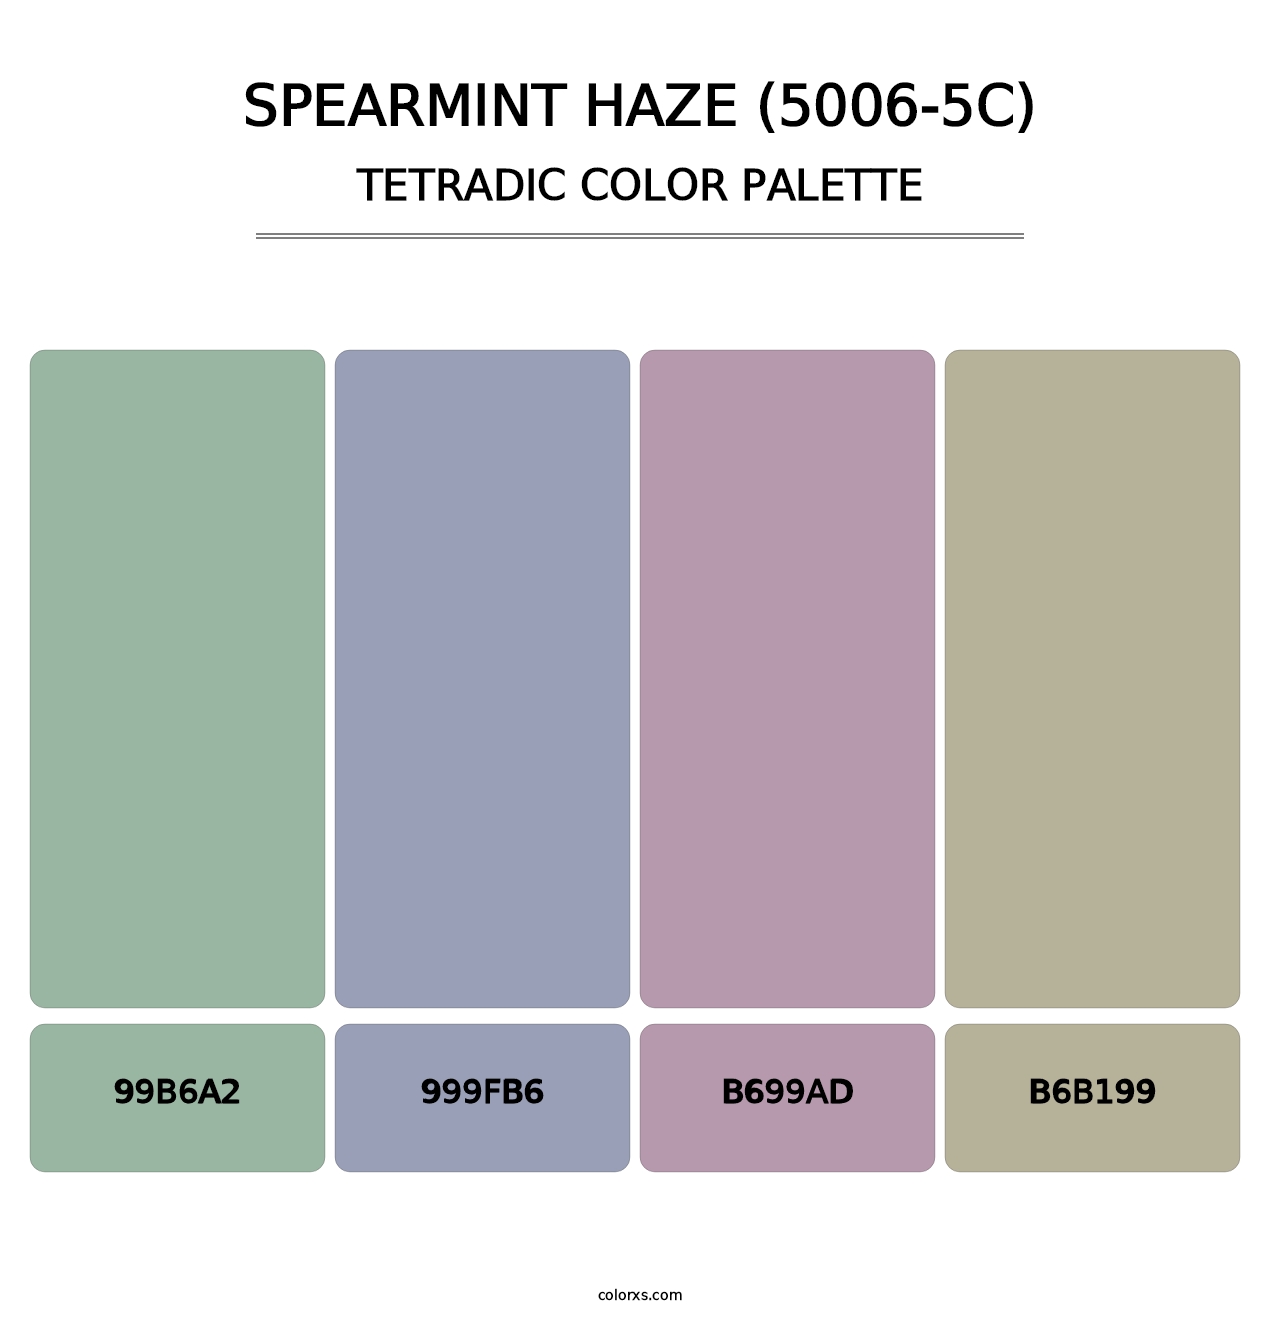 Spearmint Haze (5006-5C) - Tetradic Color Palette